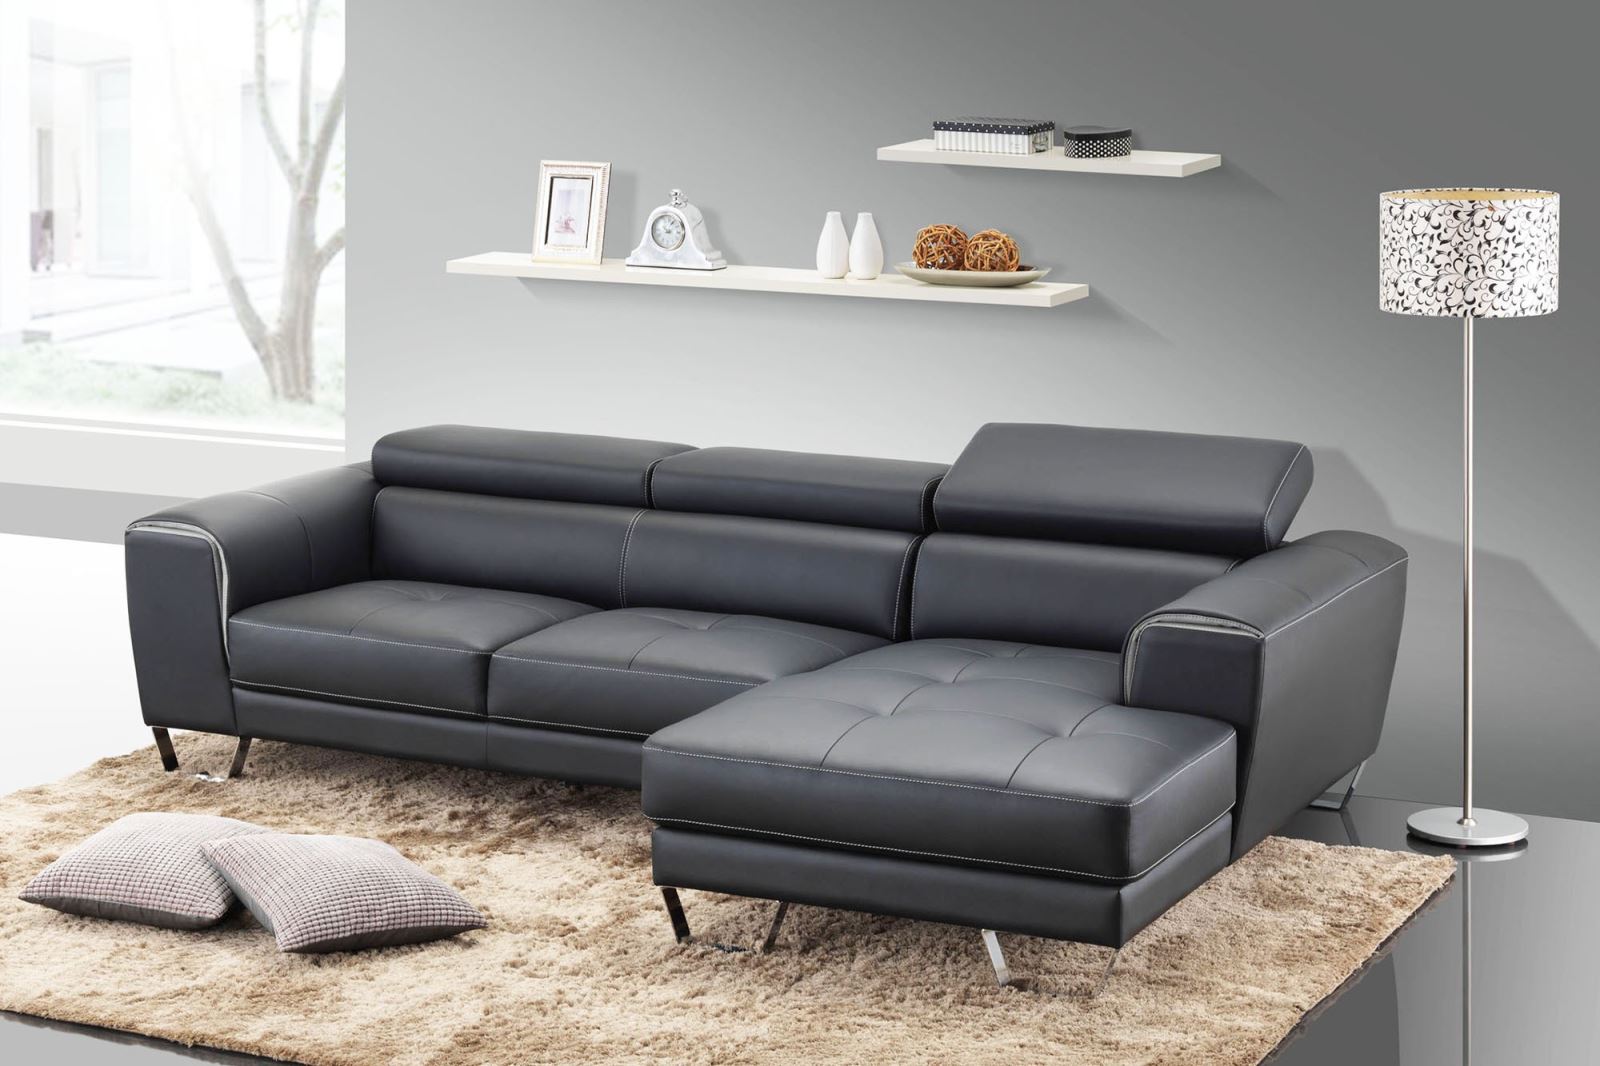 Chia sẻ mẹo kiểm tra chất lượng bộ ghế sofa - Ảnh 2